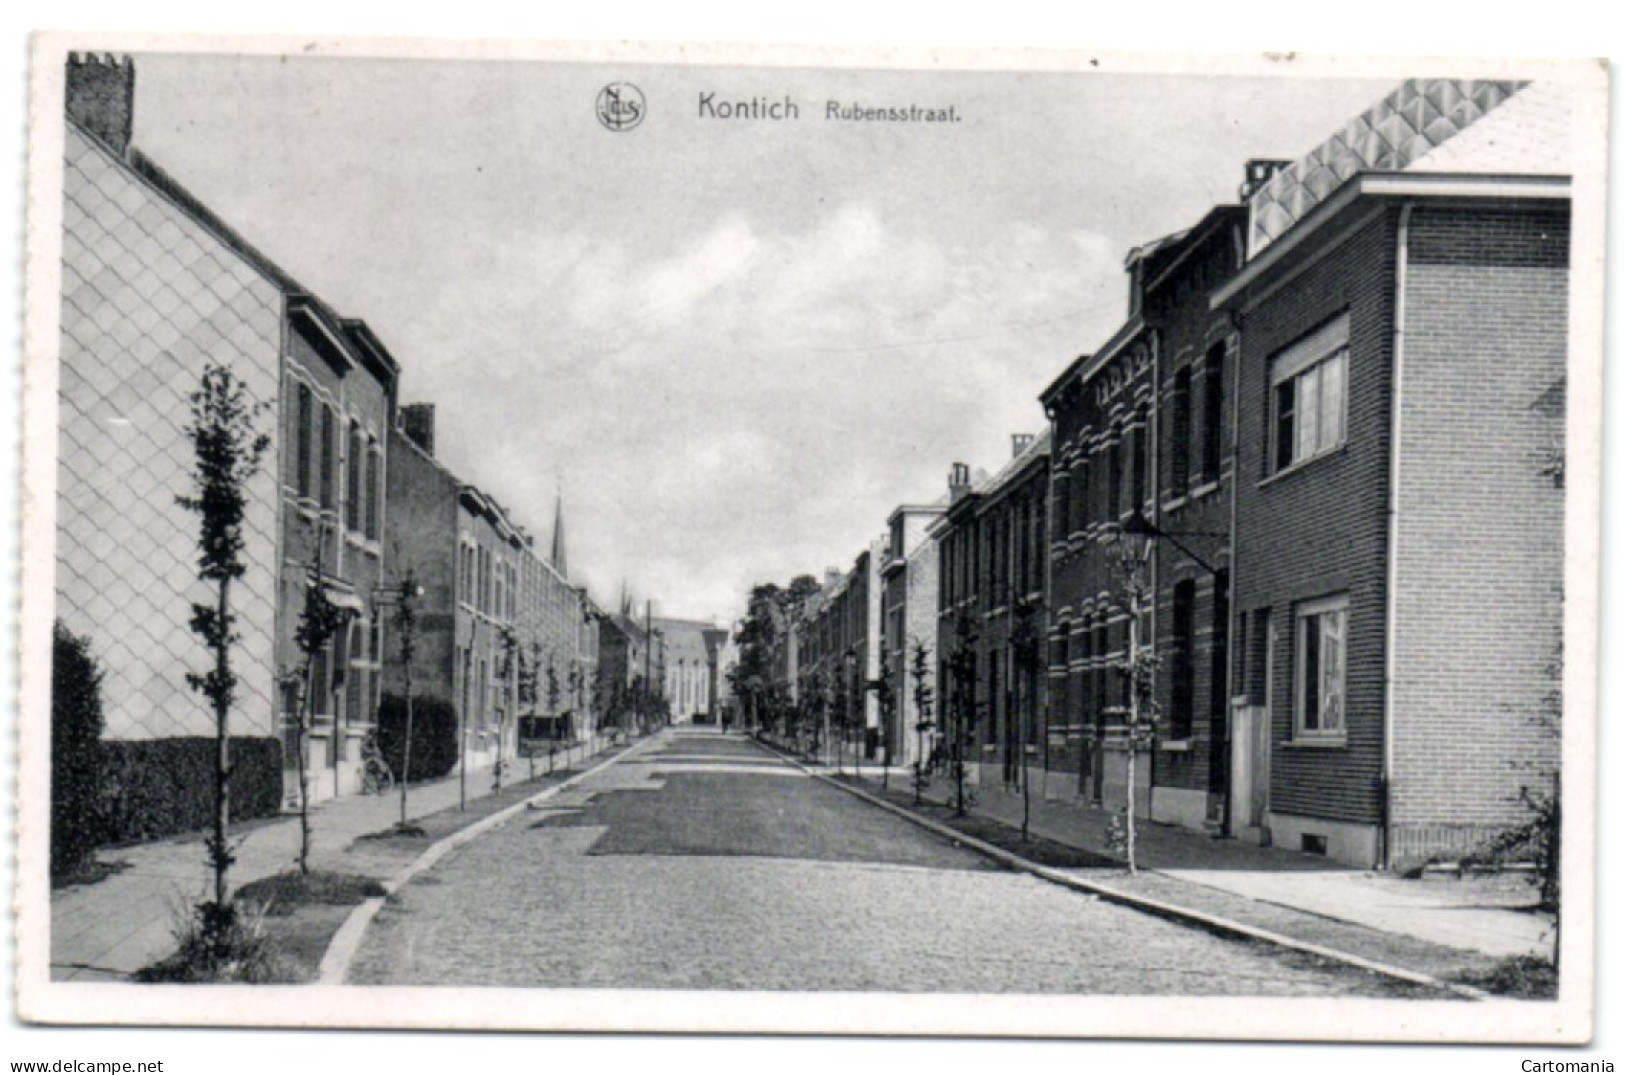 Kontich - Rubensstraat - Kontich